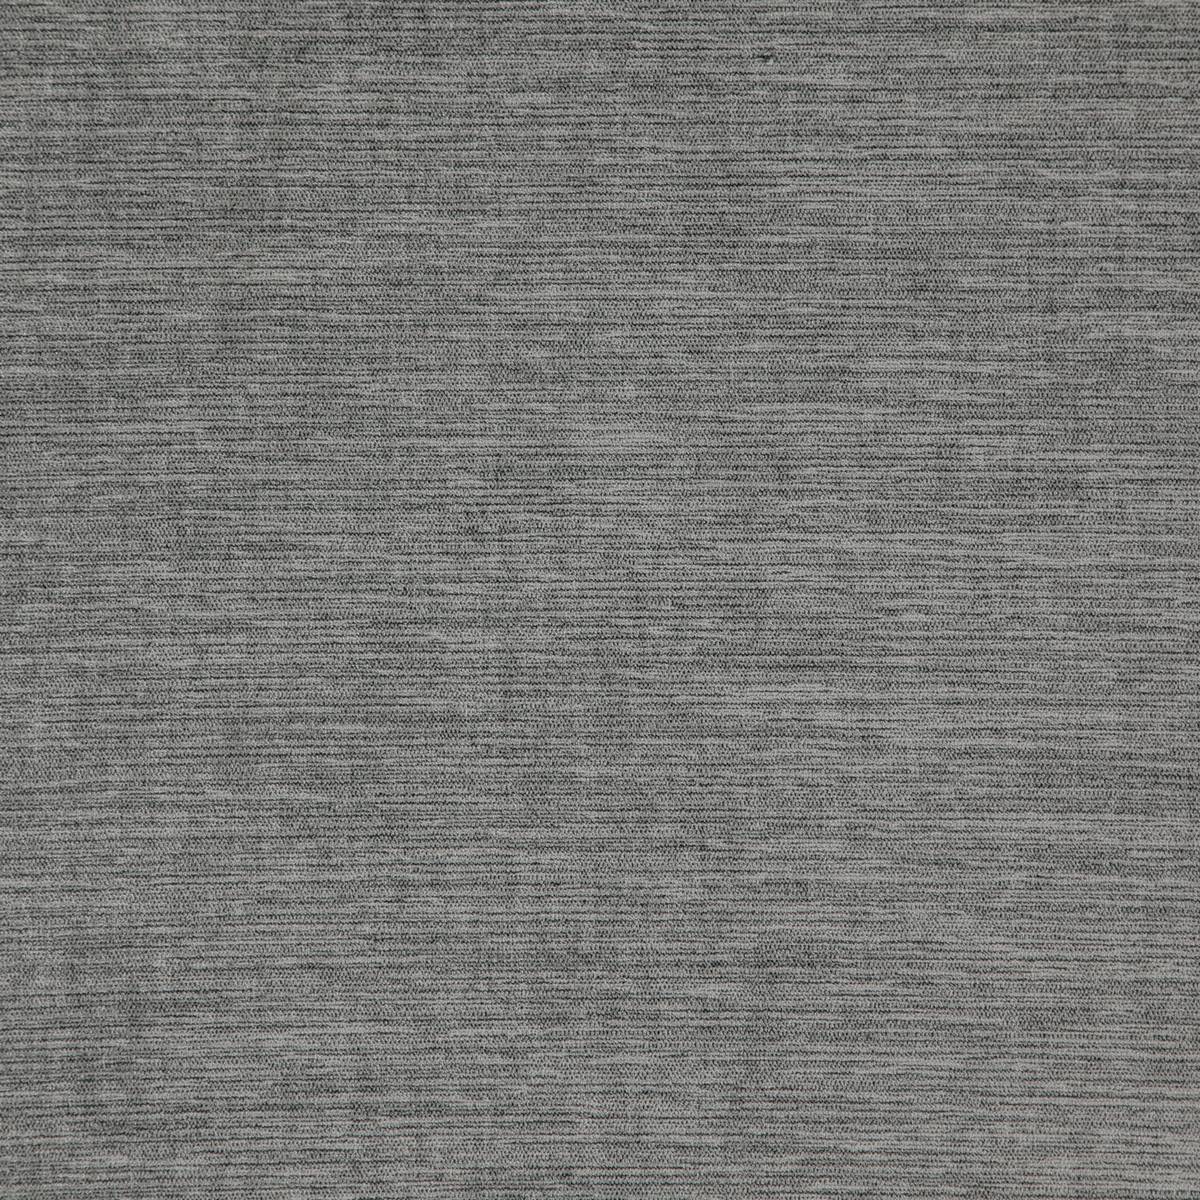 Tressillian Granite Fabric by Prestigious Textiles